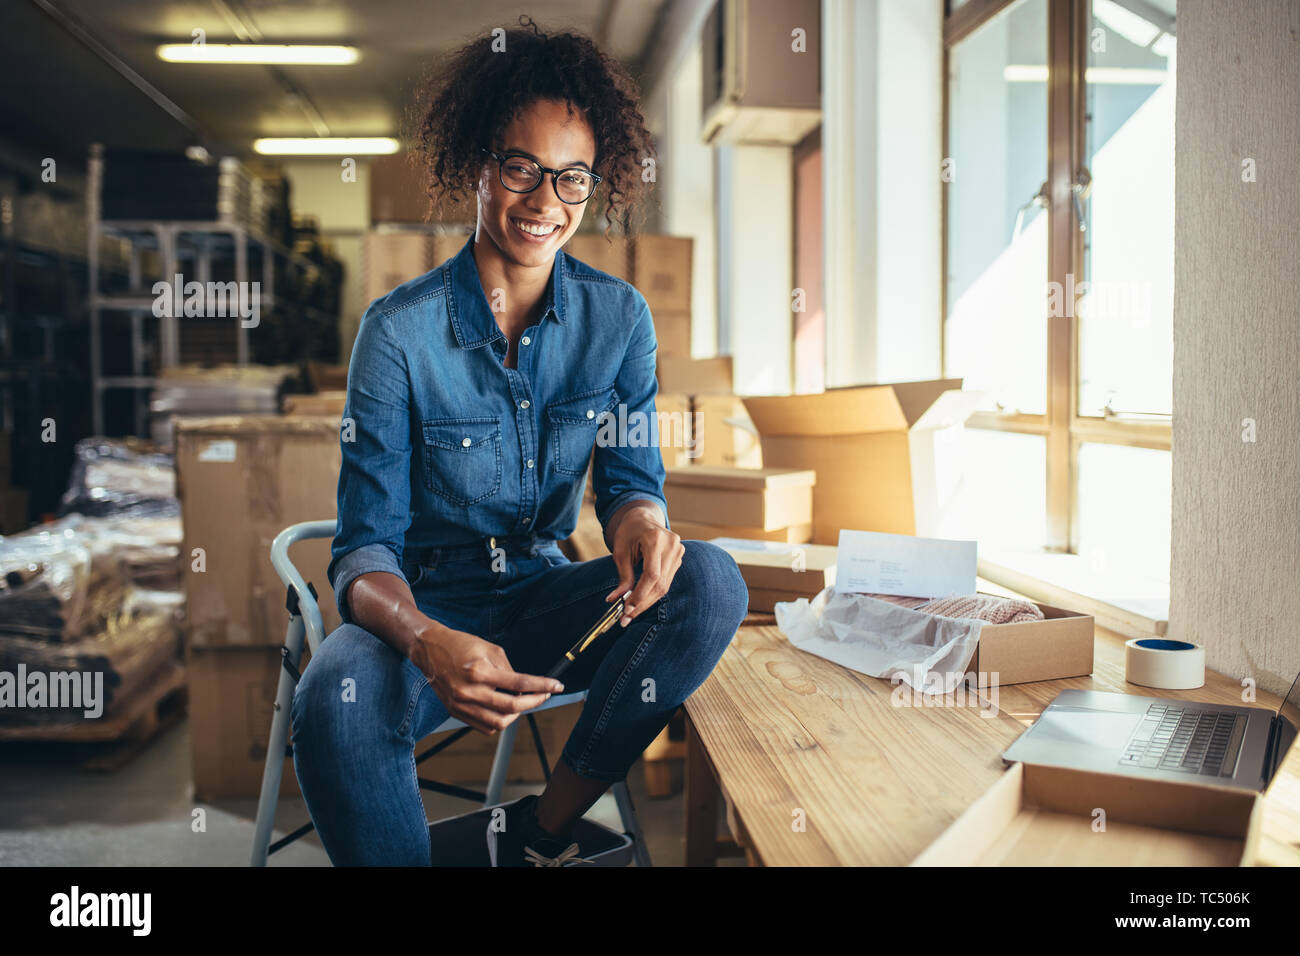 Mujer sonriente sentada en su lugar de trabajo. Seguro de propietario de negocio online mirando a la cámara y sonriendo. Foto de stock